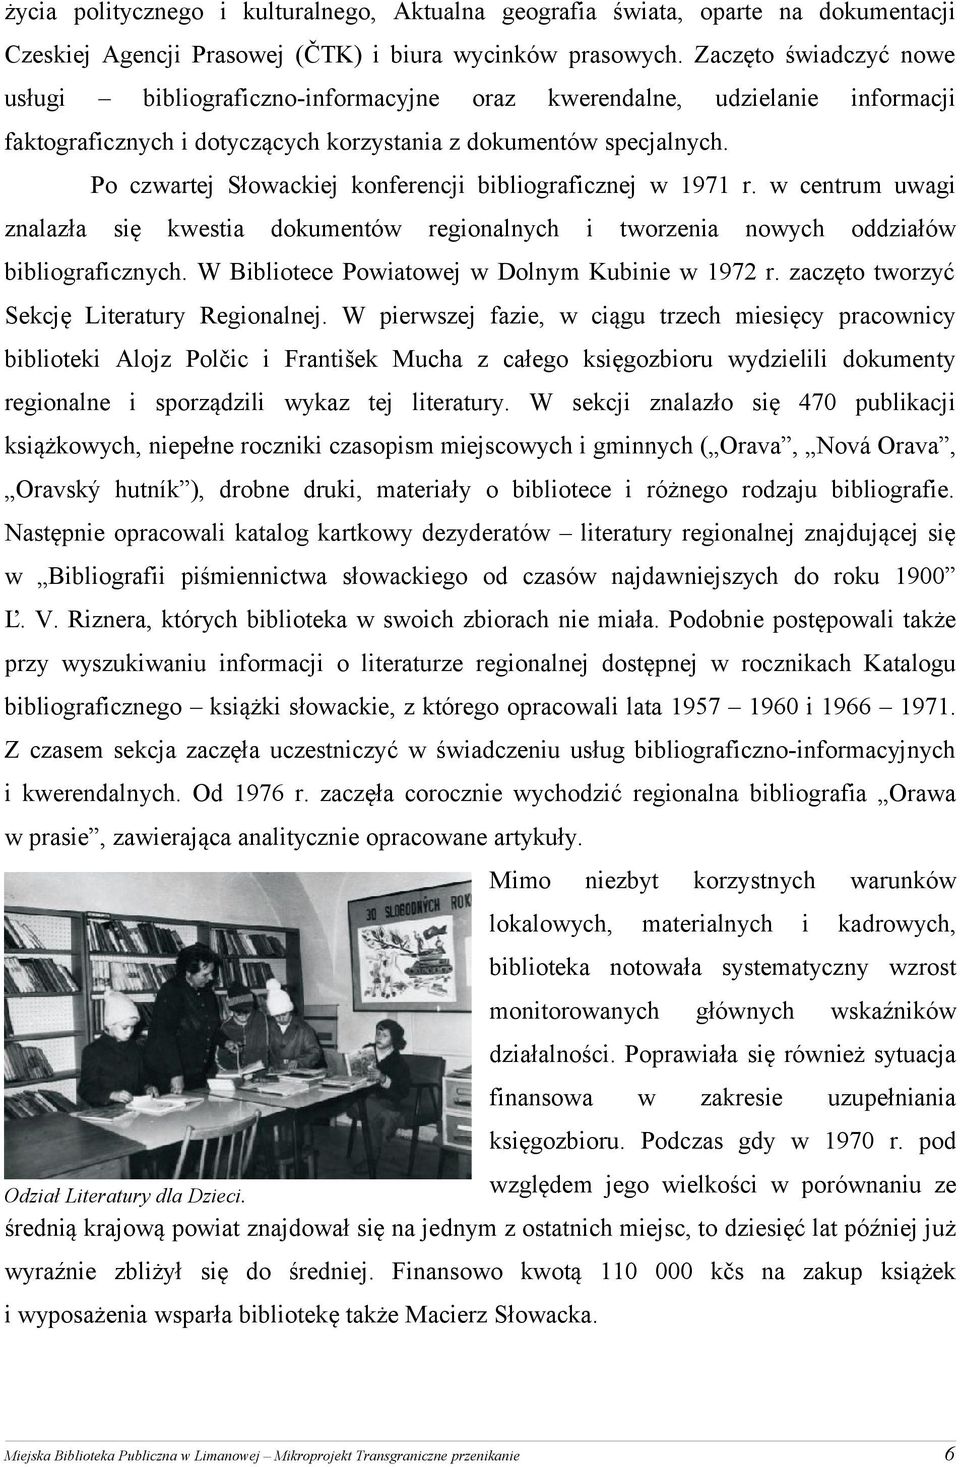 Po czwartej Słowackej konferencj bblografcznej w 1971 r. w centrum uwag znalazła sę kwesta dokumentów regonalnych tworzena nowych oddzałów bblografcznych. W Bblotece Powatowej w Dolnym Kubne w 1972 r.